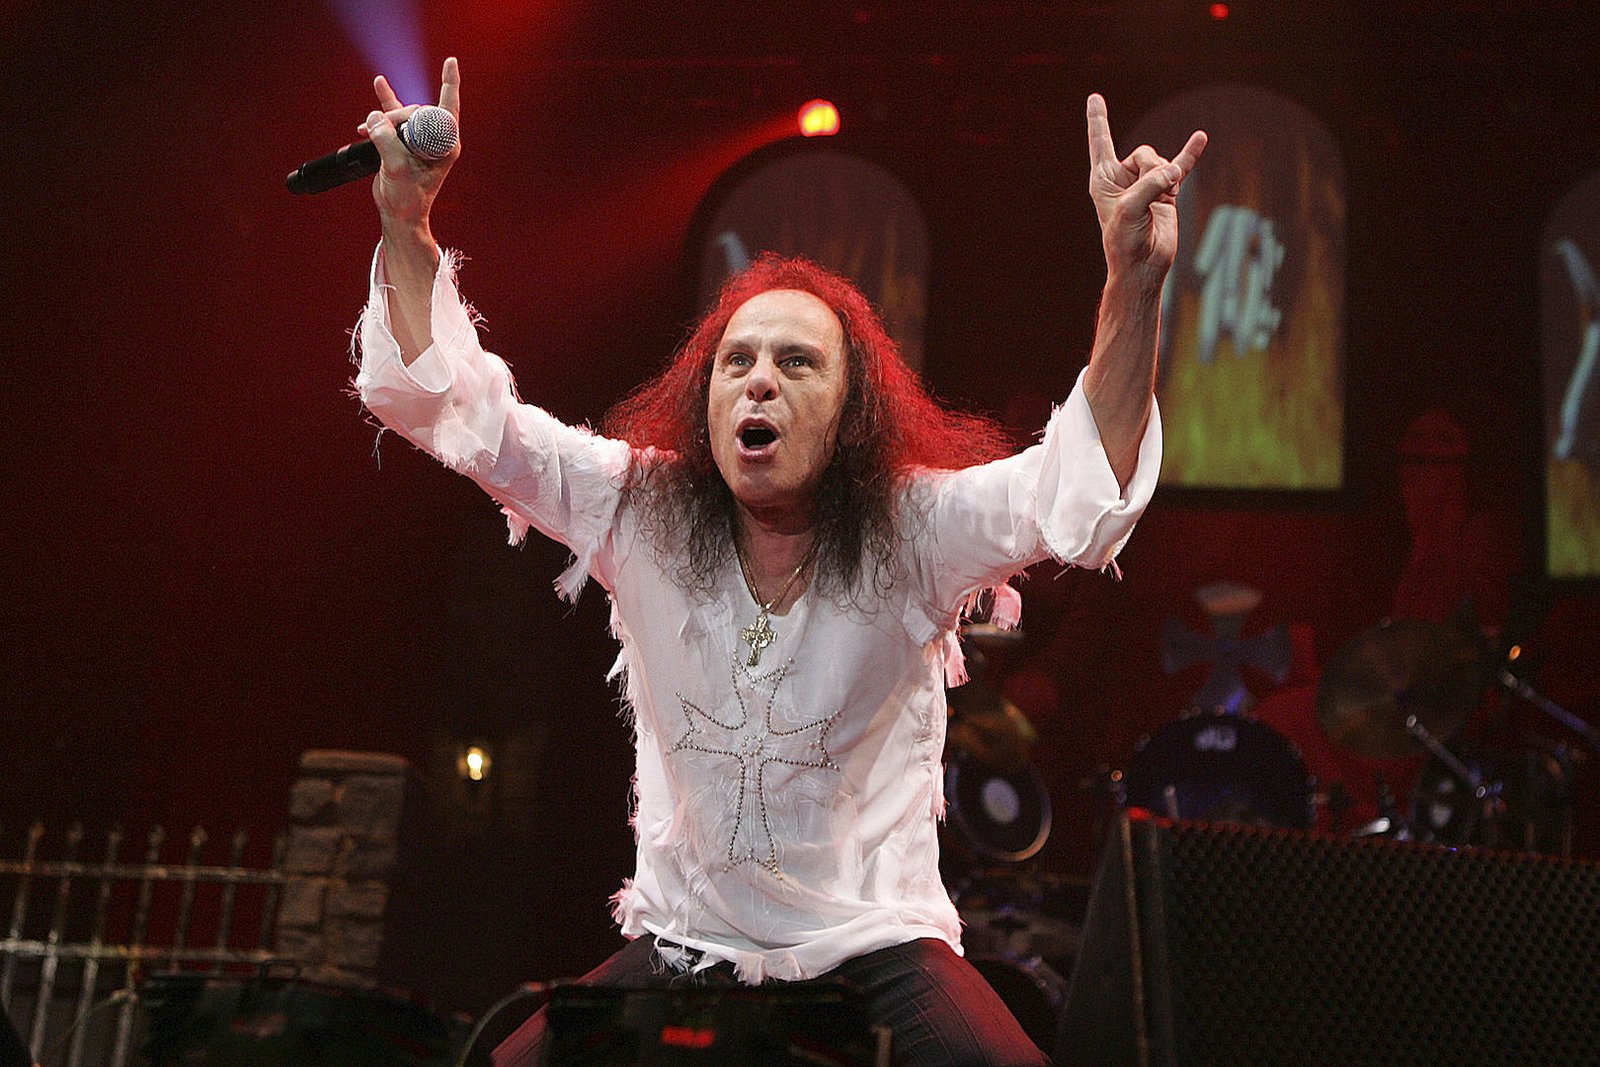 Ronnie James Dio Black Sabbath publicará fotolibro sobre la era de Dio Summa Inferno | Metal + Rock & Alternative Music